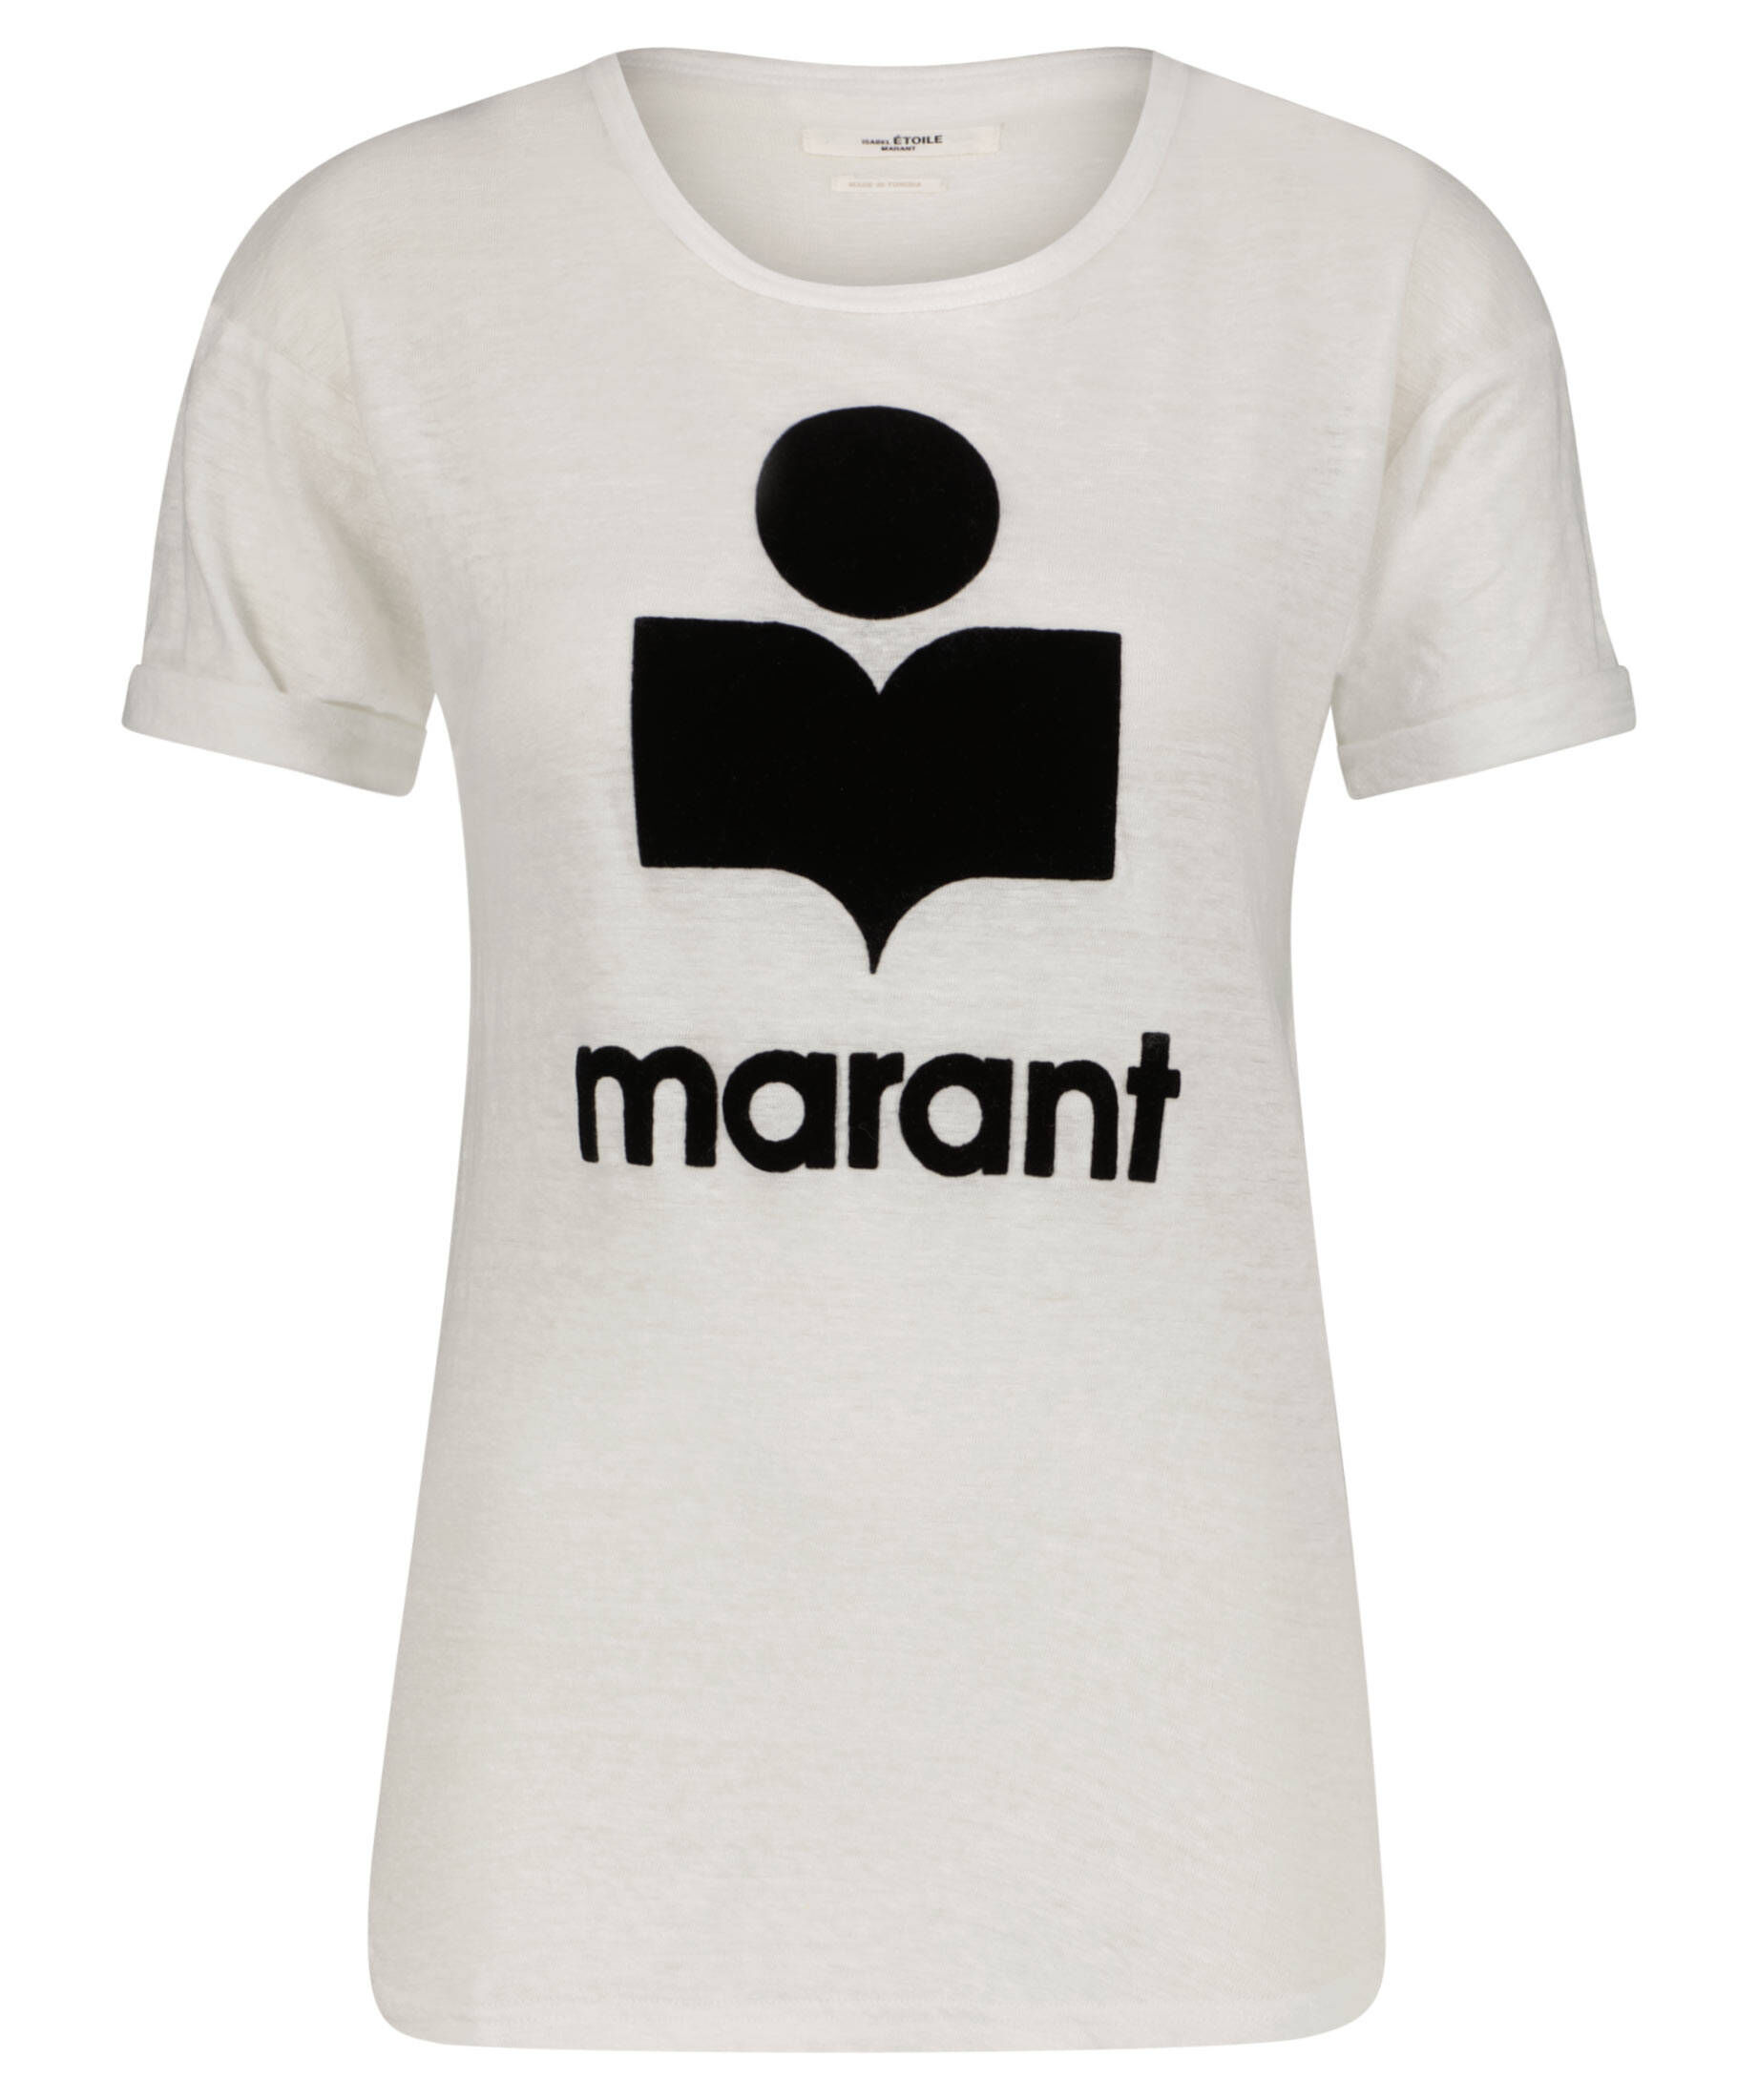 Étoile Isabel Marant Baumwolle T-Shirt mit Logo in Weiß Damen Bekleidung Oberteile T-Shirts 